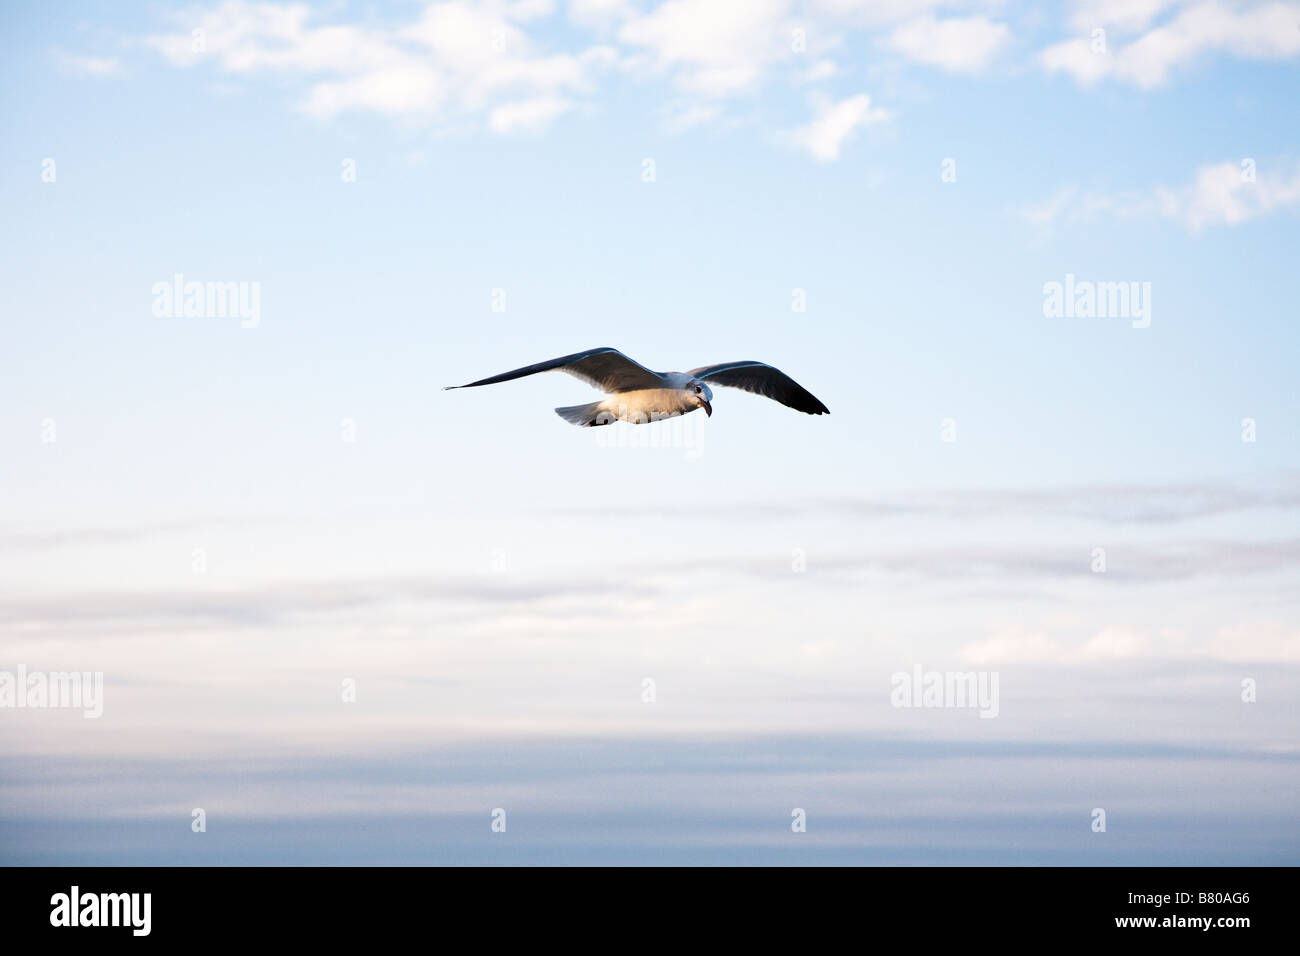 Seagull flying across blue sky Stock Photo